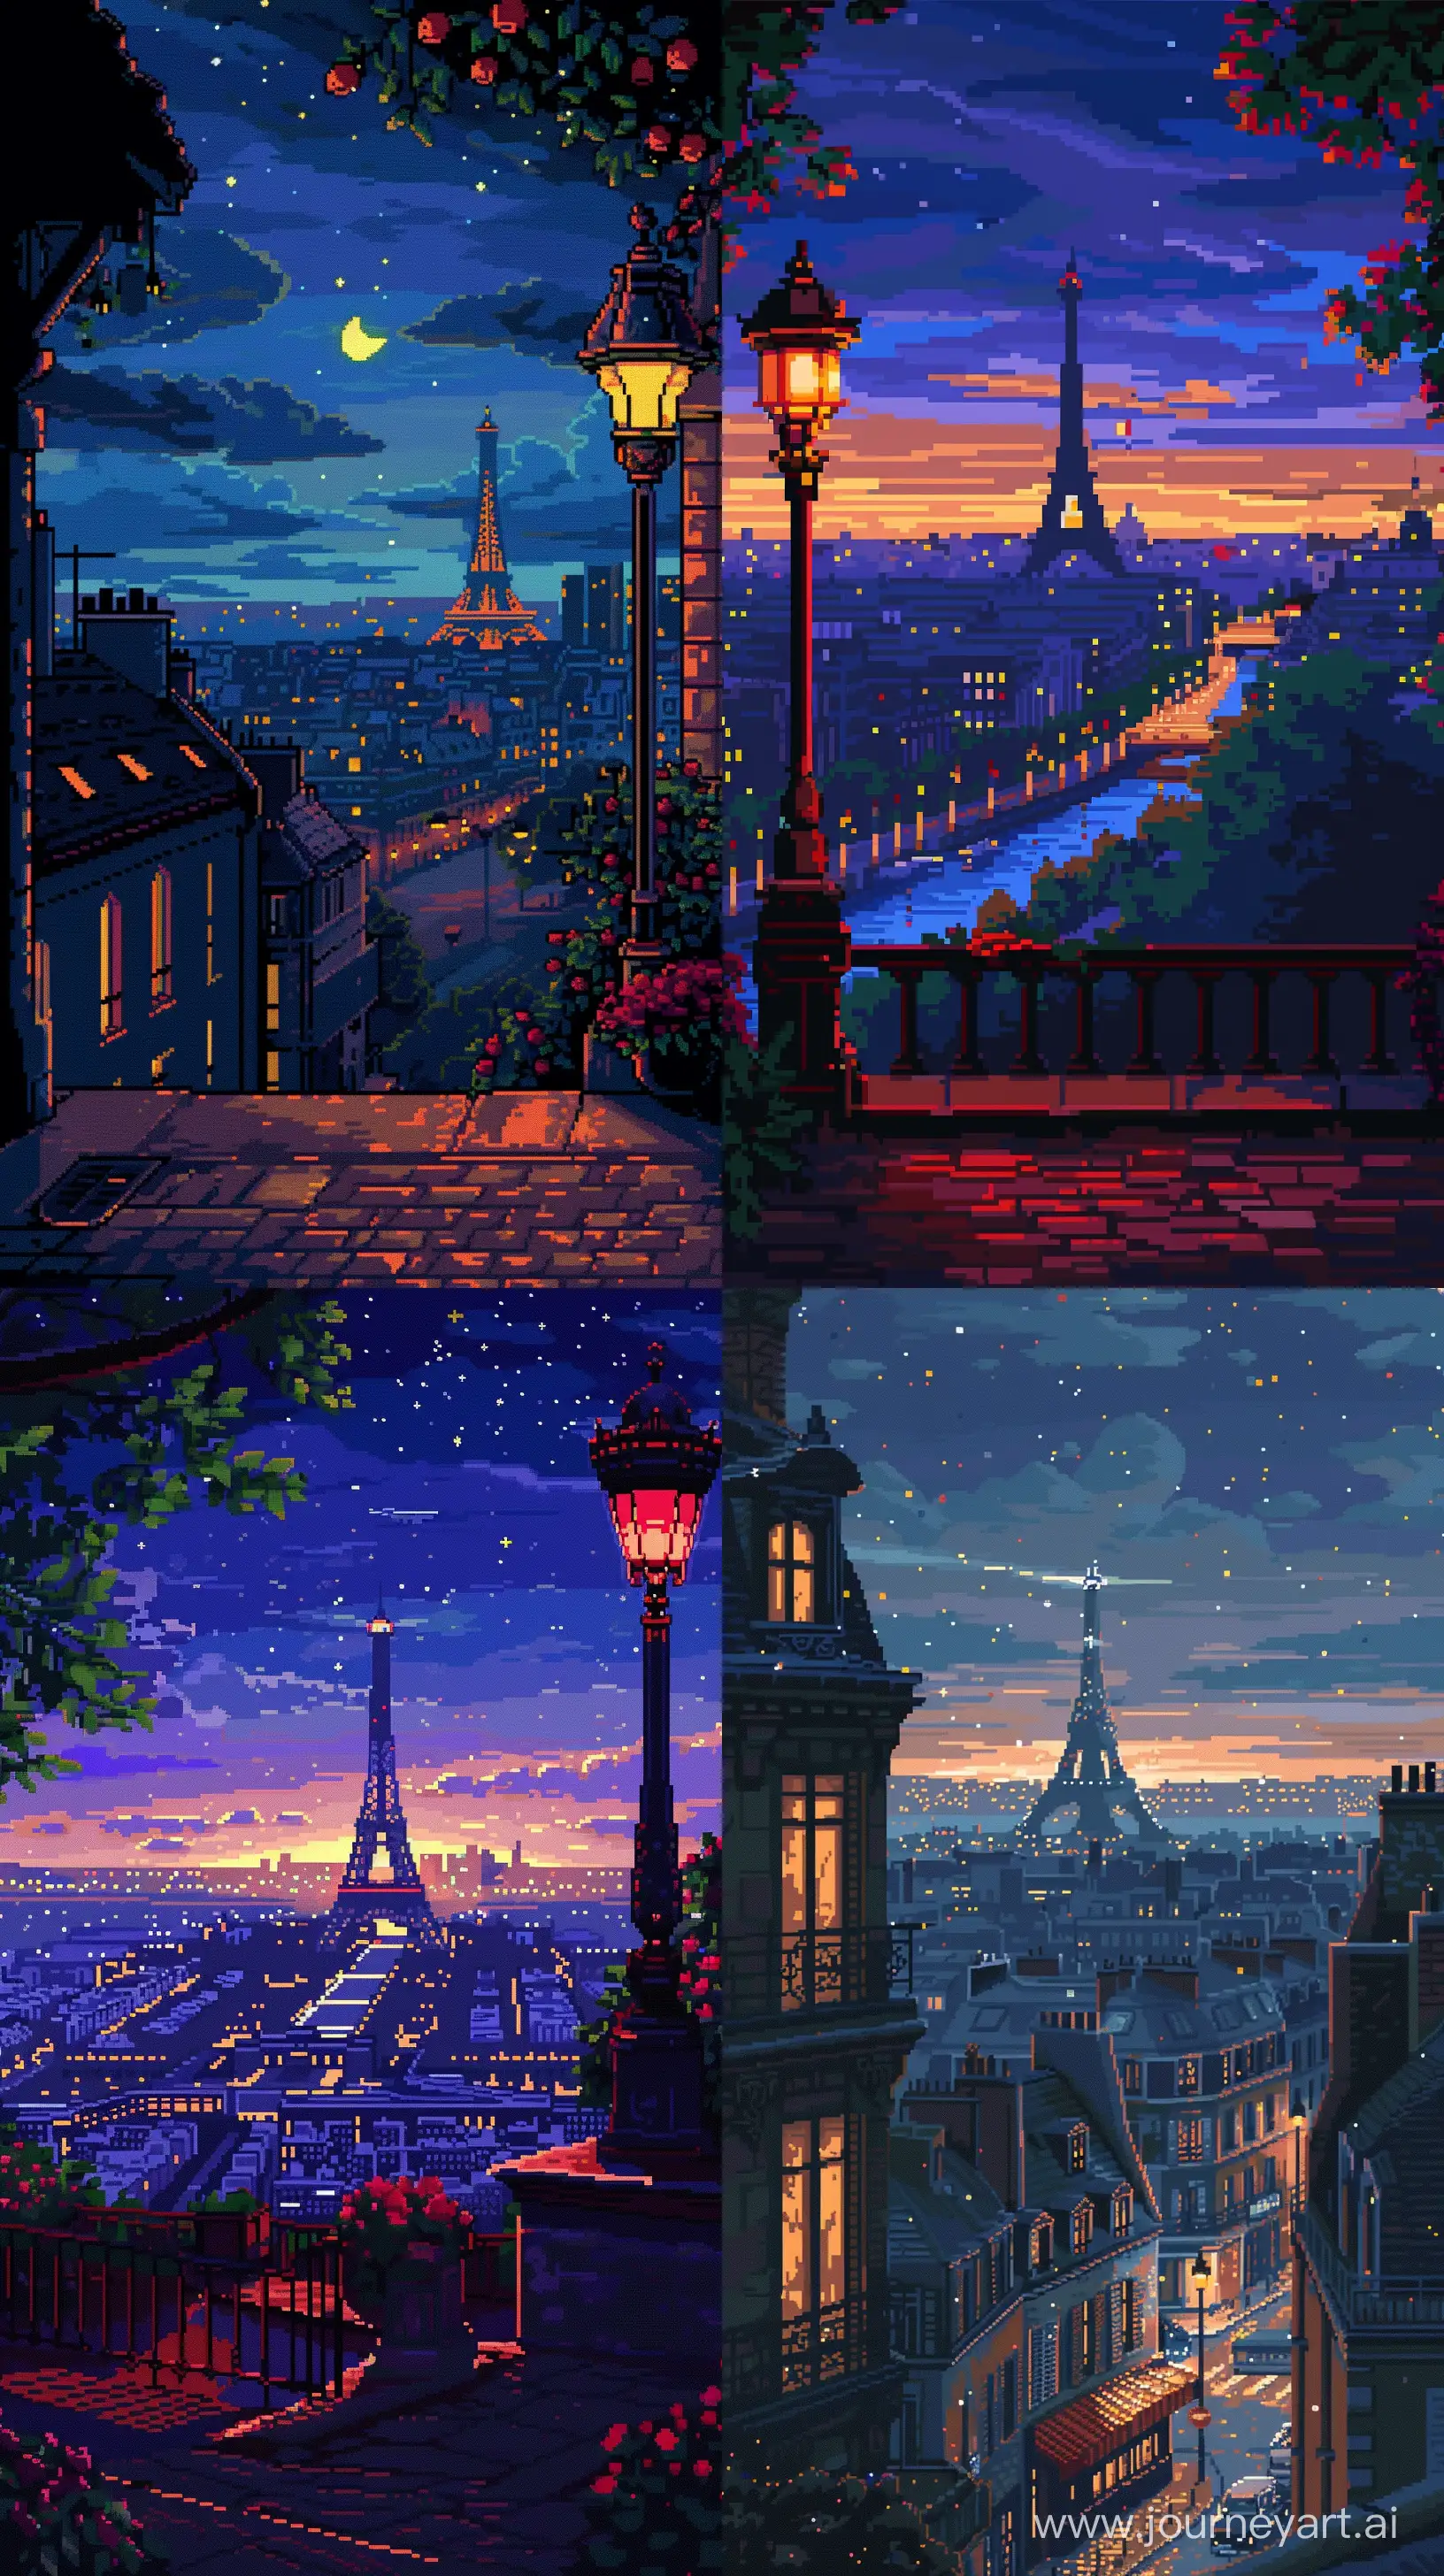 8Bit-Pixel-Art-Night-View-of-Paris-City-with-Retro-Color-Details